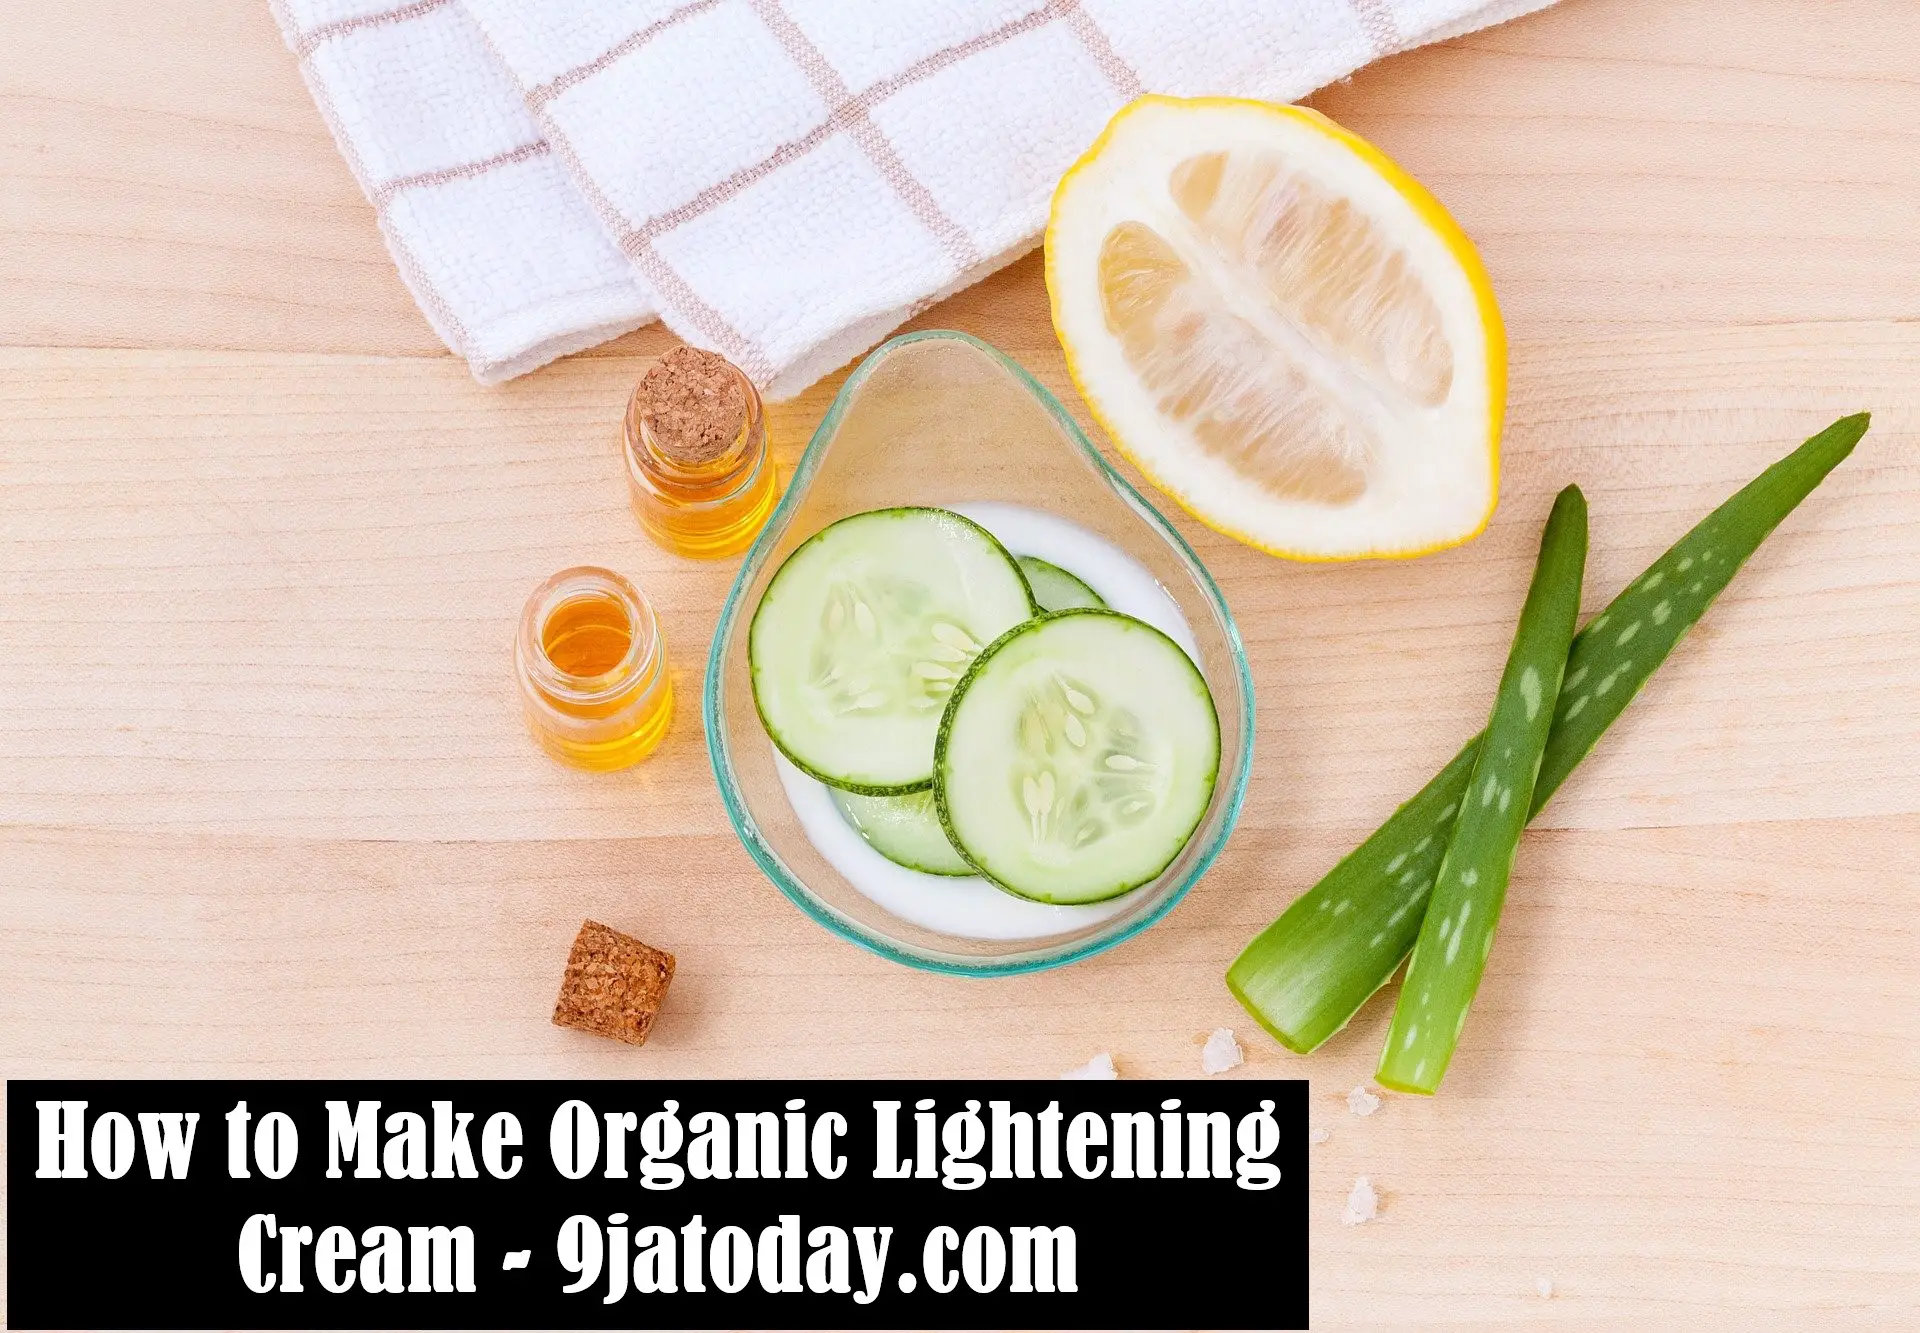 Make Organic Lightening Cream